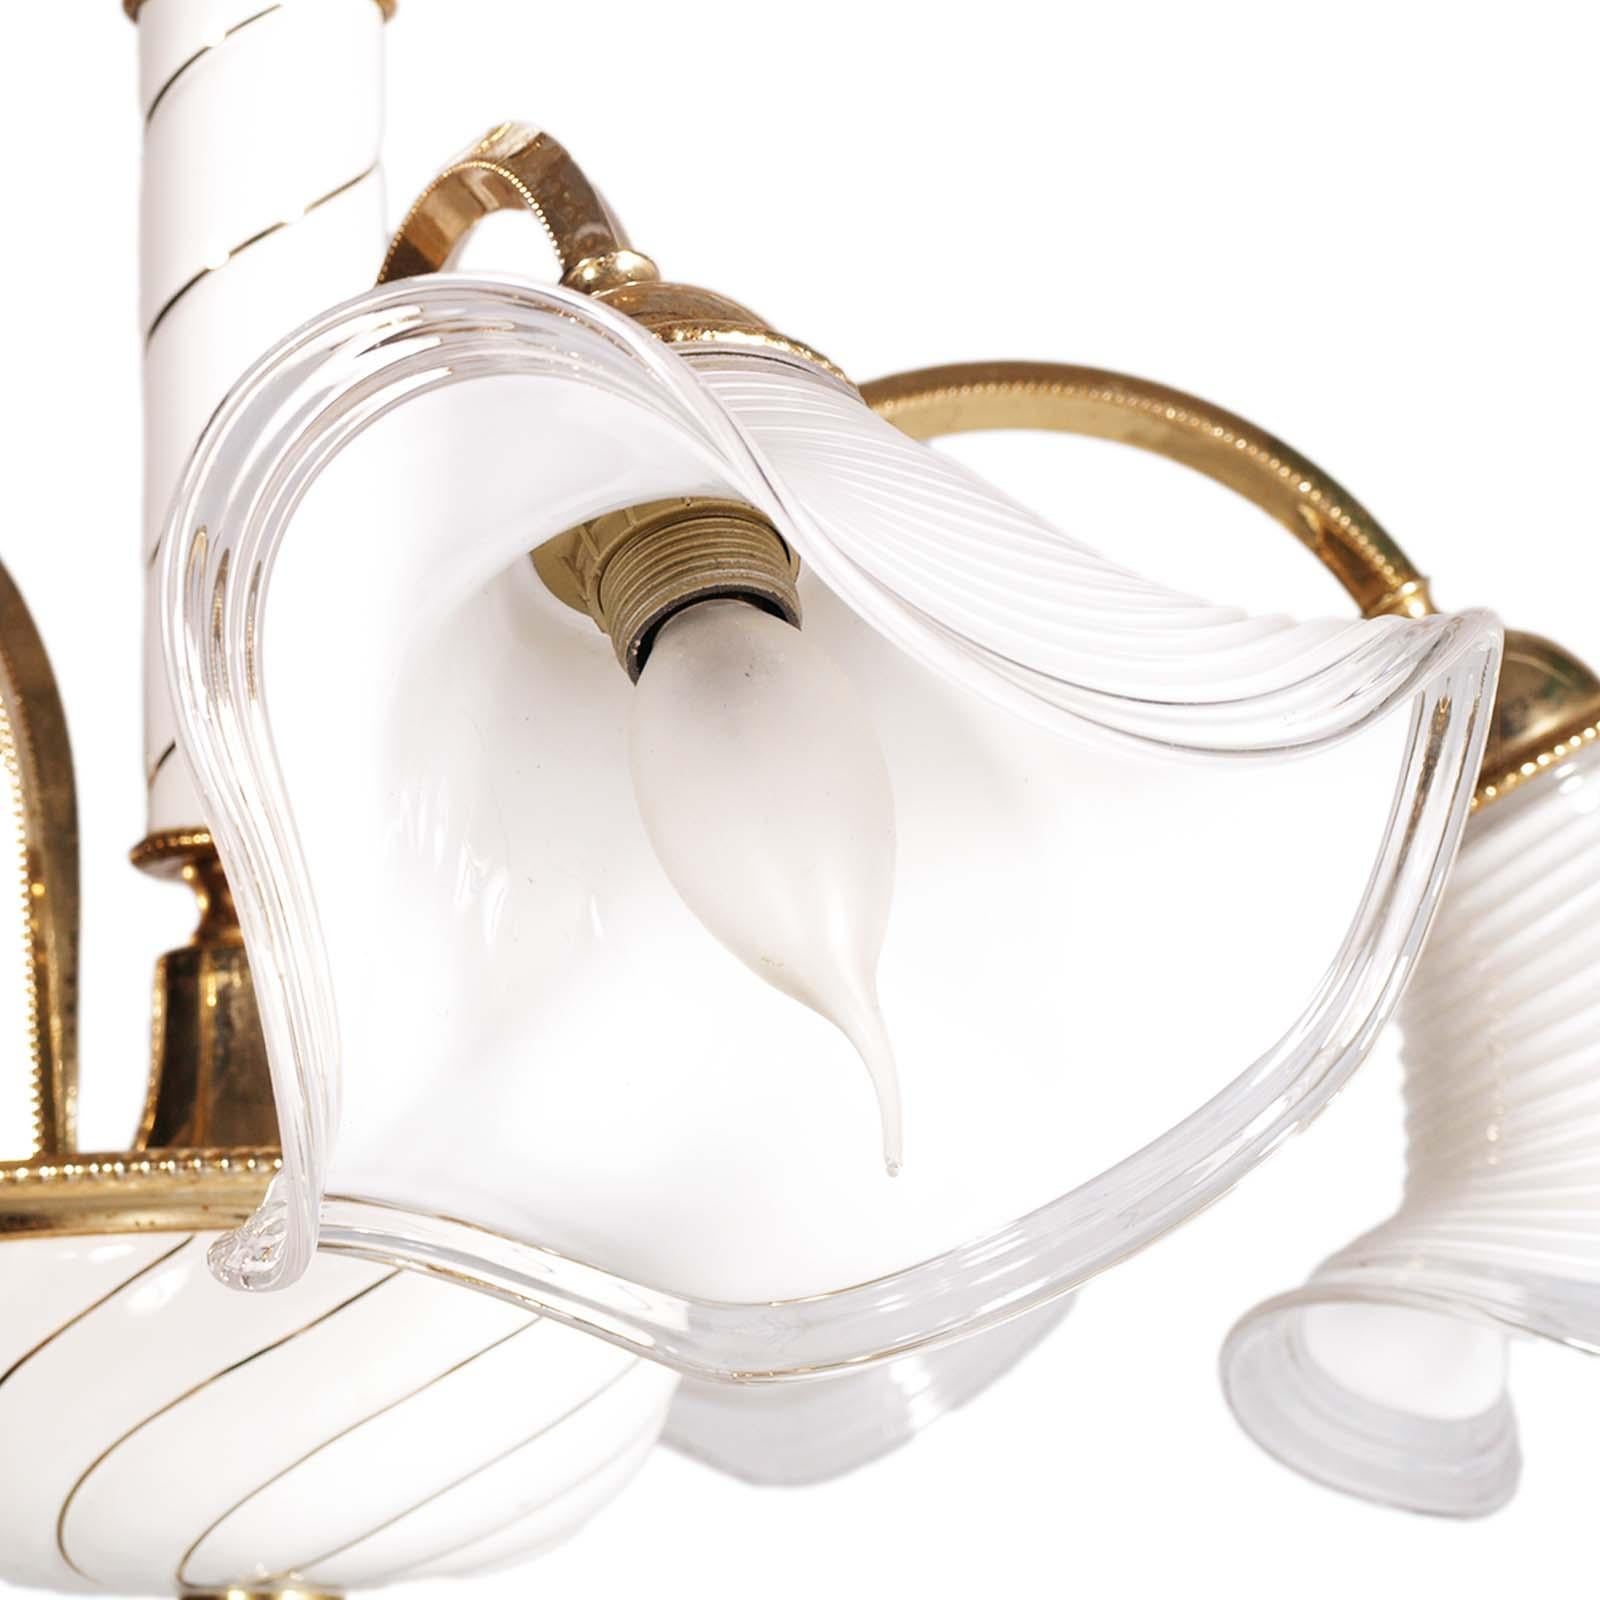 Elégant lustre Murano des années 70, 5 lumières, métal doré verre laiteux, avec système électrique révisé et prêt à être utilisé.
Le design est très élégant avec le verre laiteux transparent bordé de fil d'or pur, et les parties métalliques dorées